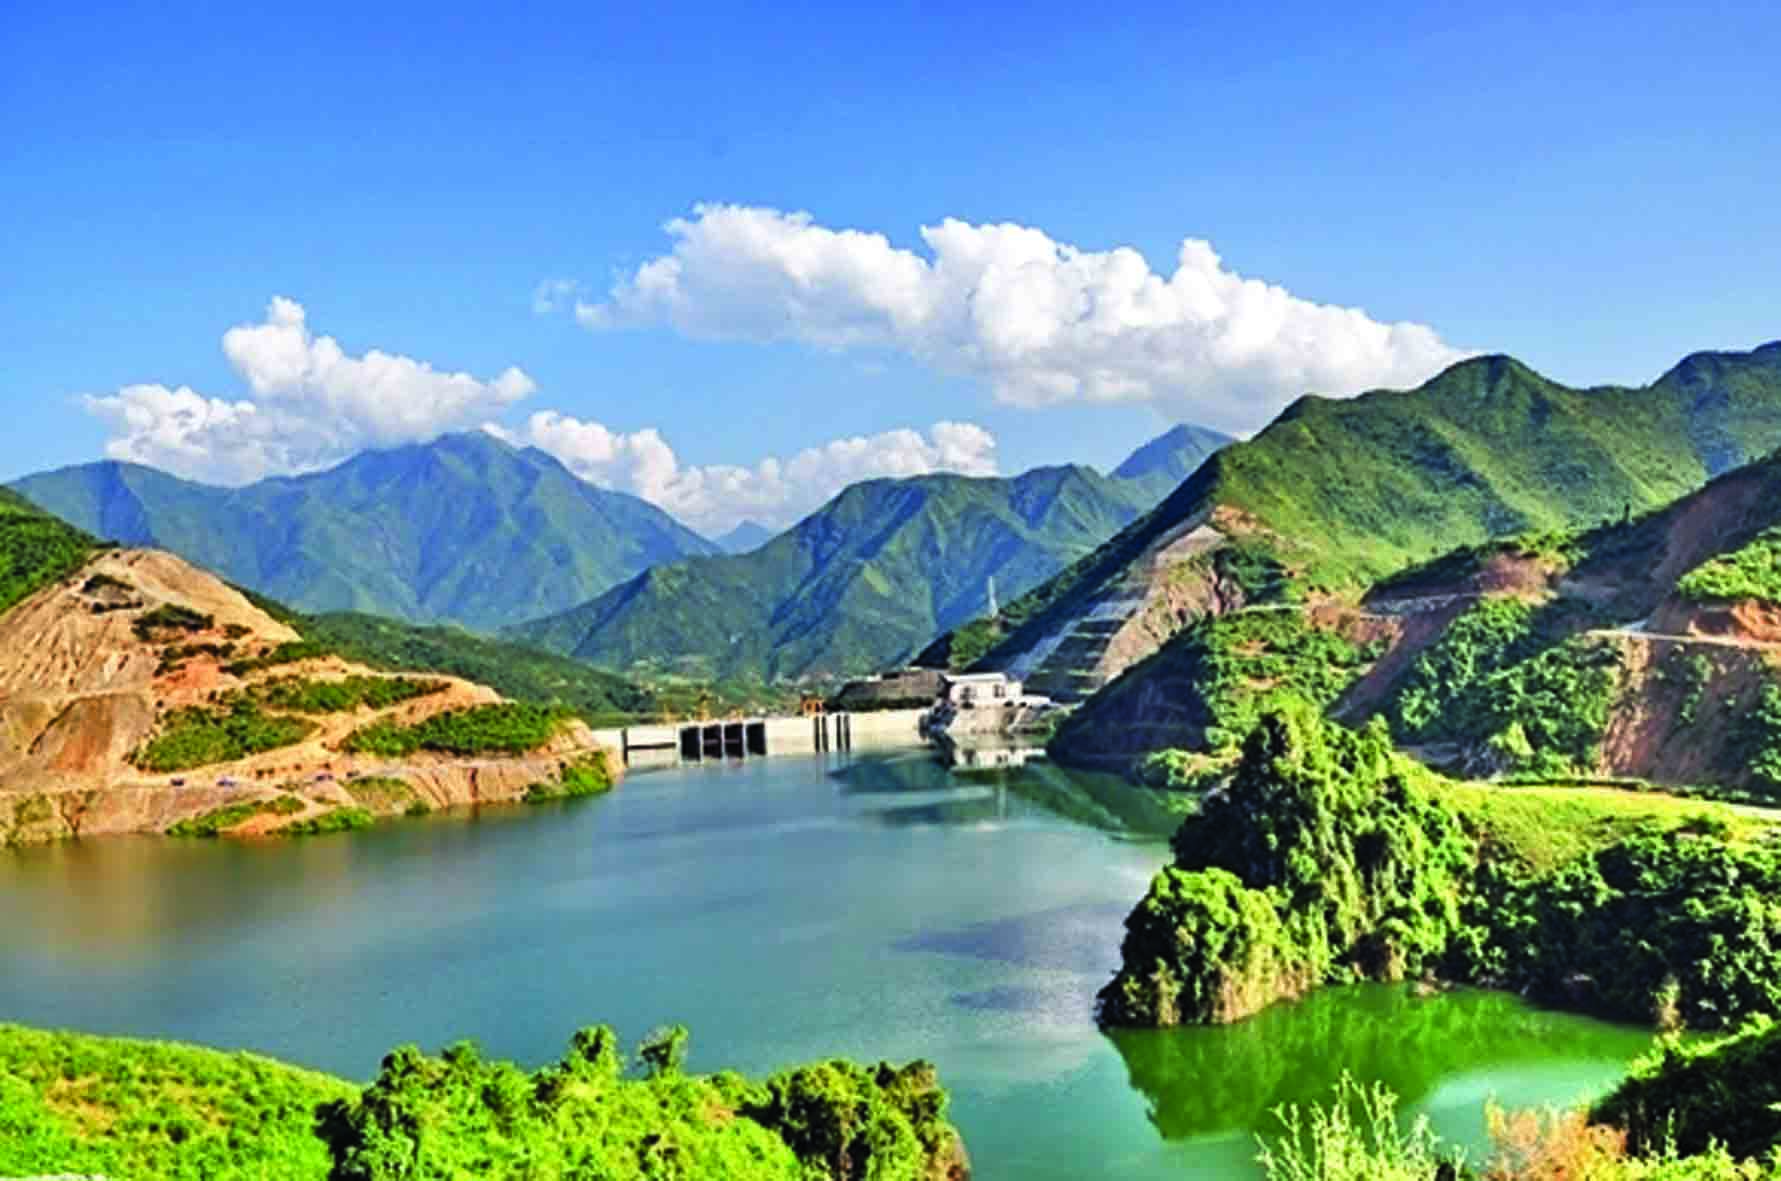 Du lịch lòng hồ thủy điện Huổi Quảng, thủy điện Bản Chát